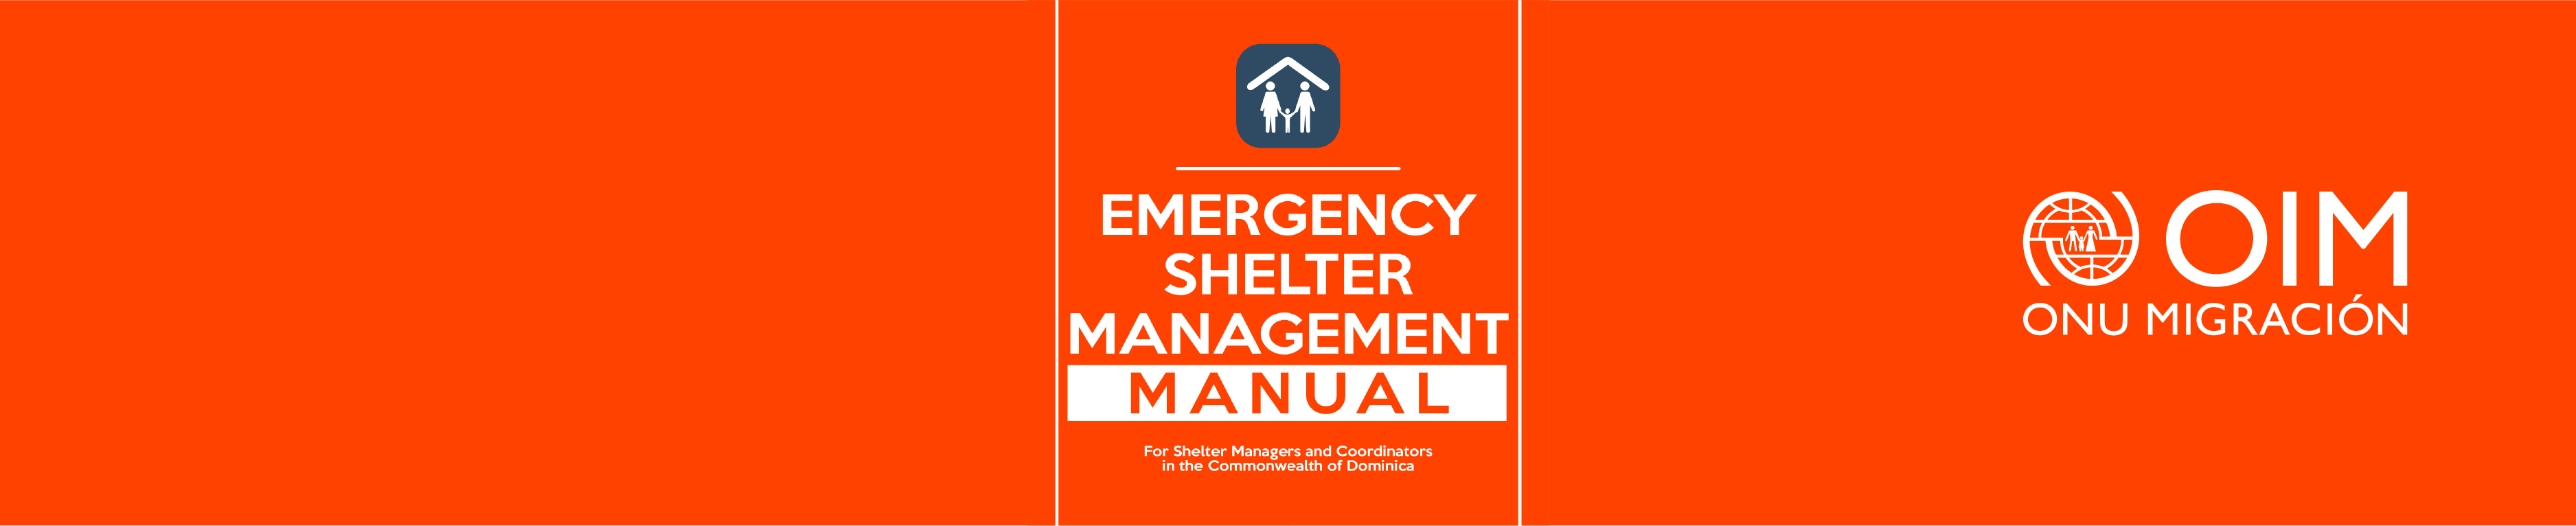 Manual de gestión de albergues de emergencia para gerentes y coordinadores de refugios en la Mancomunidad de Dominica